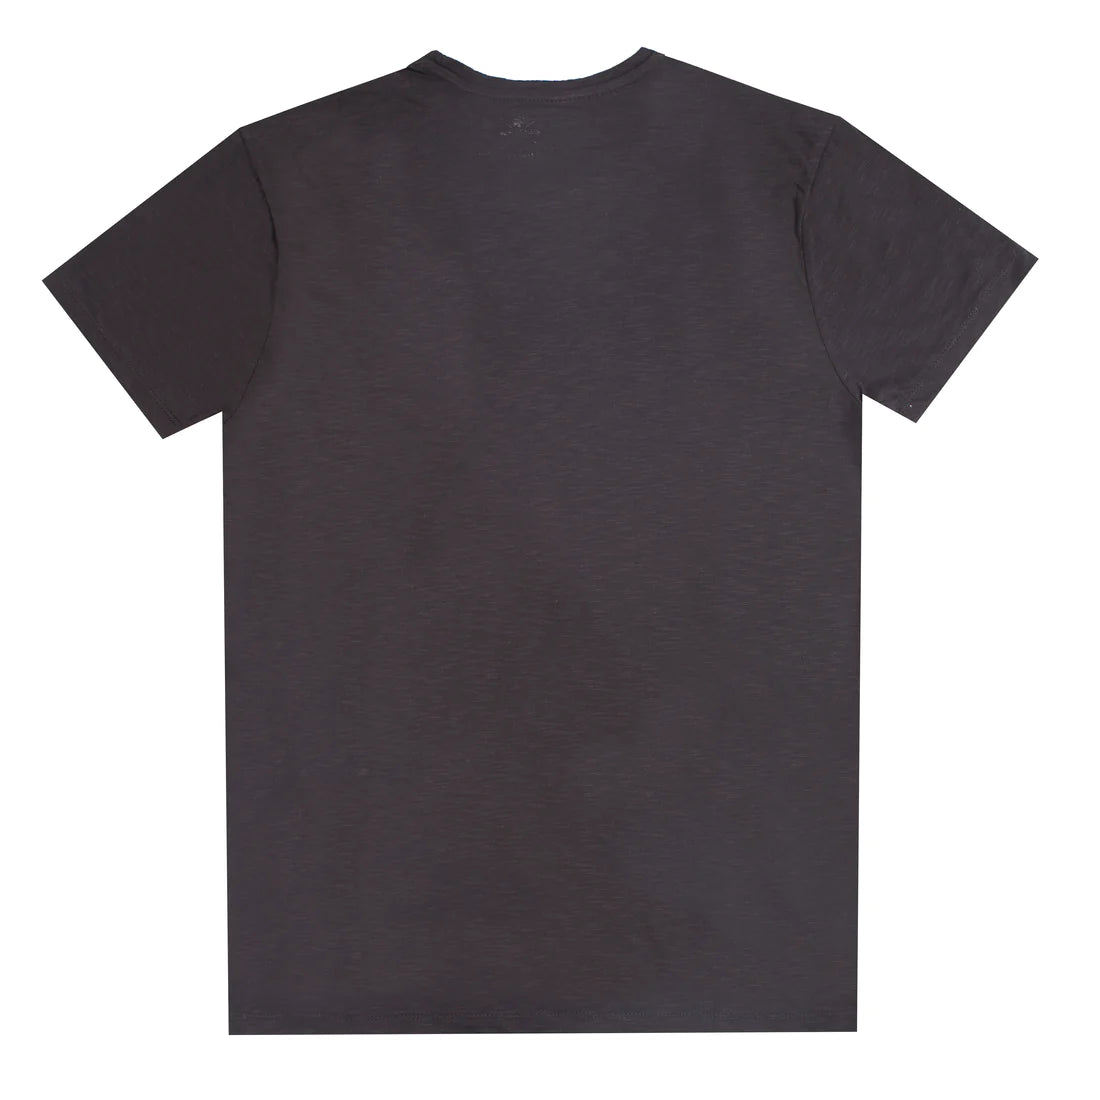 black T-shirt for men